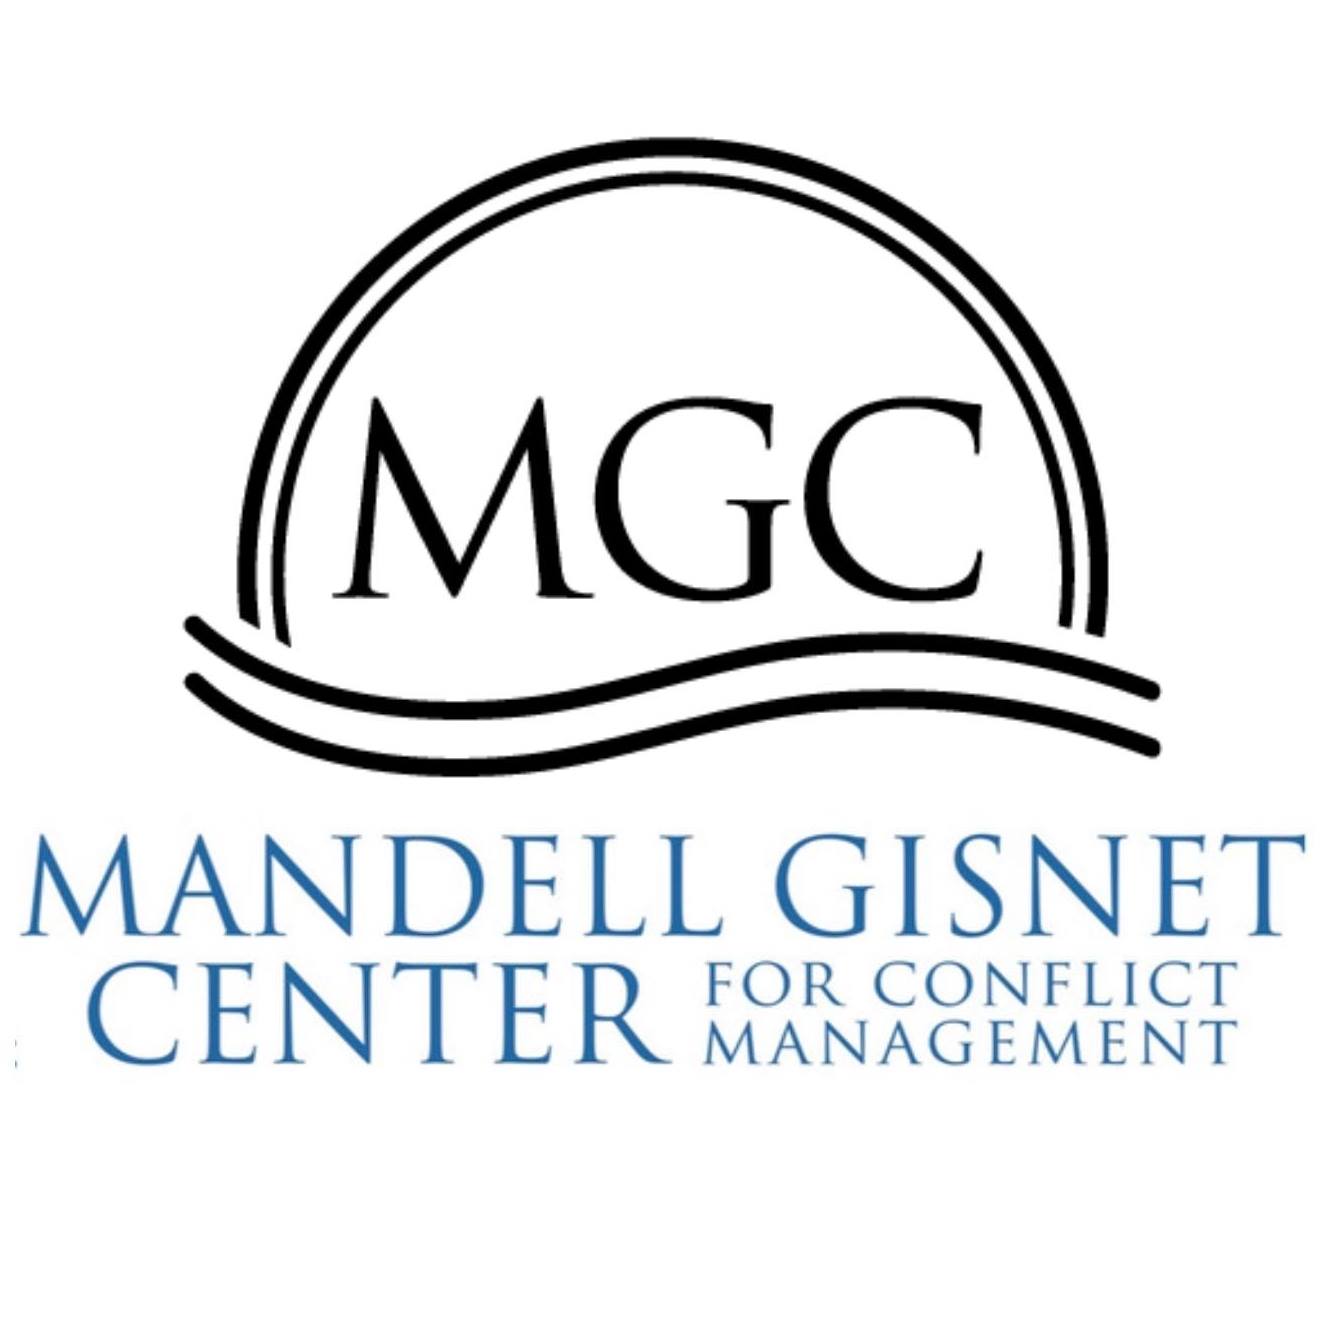 MGC logo in white